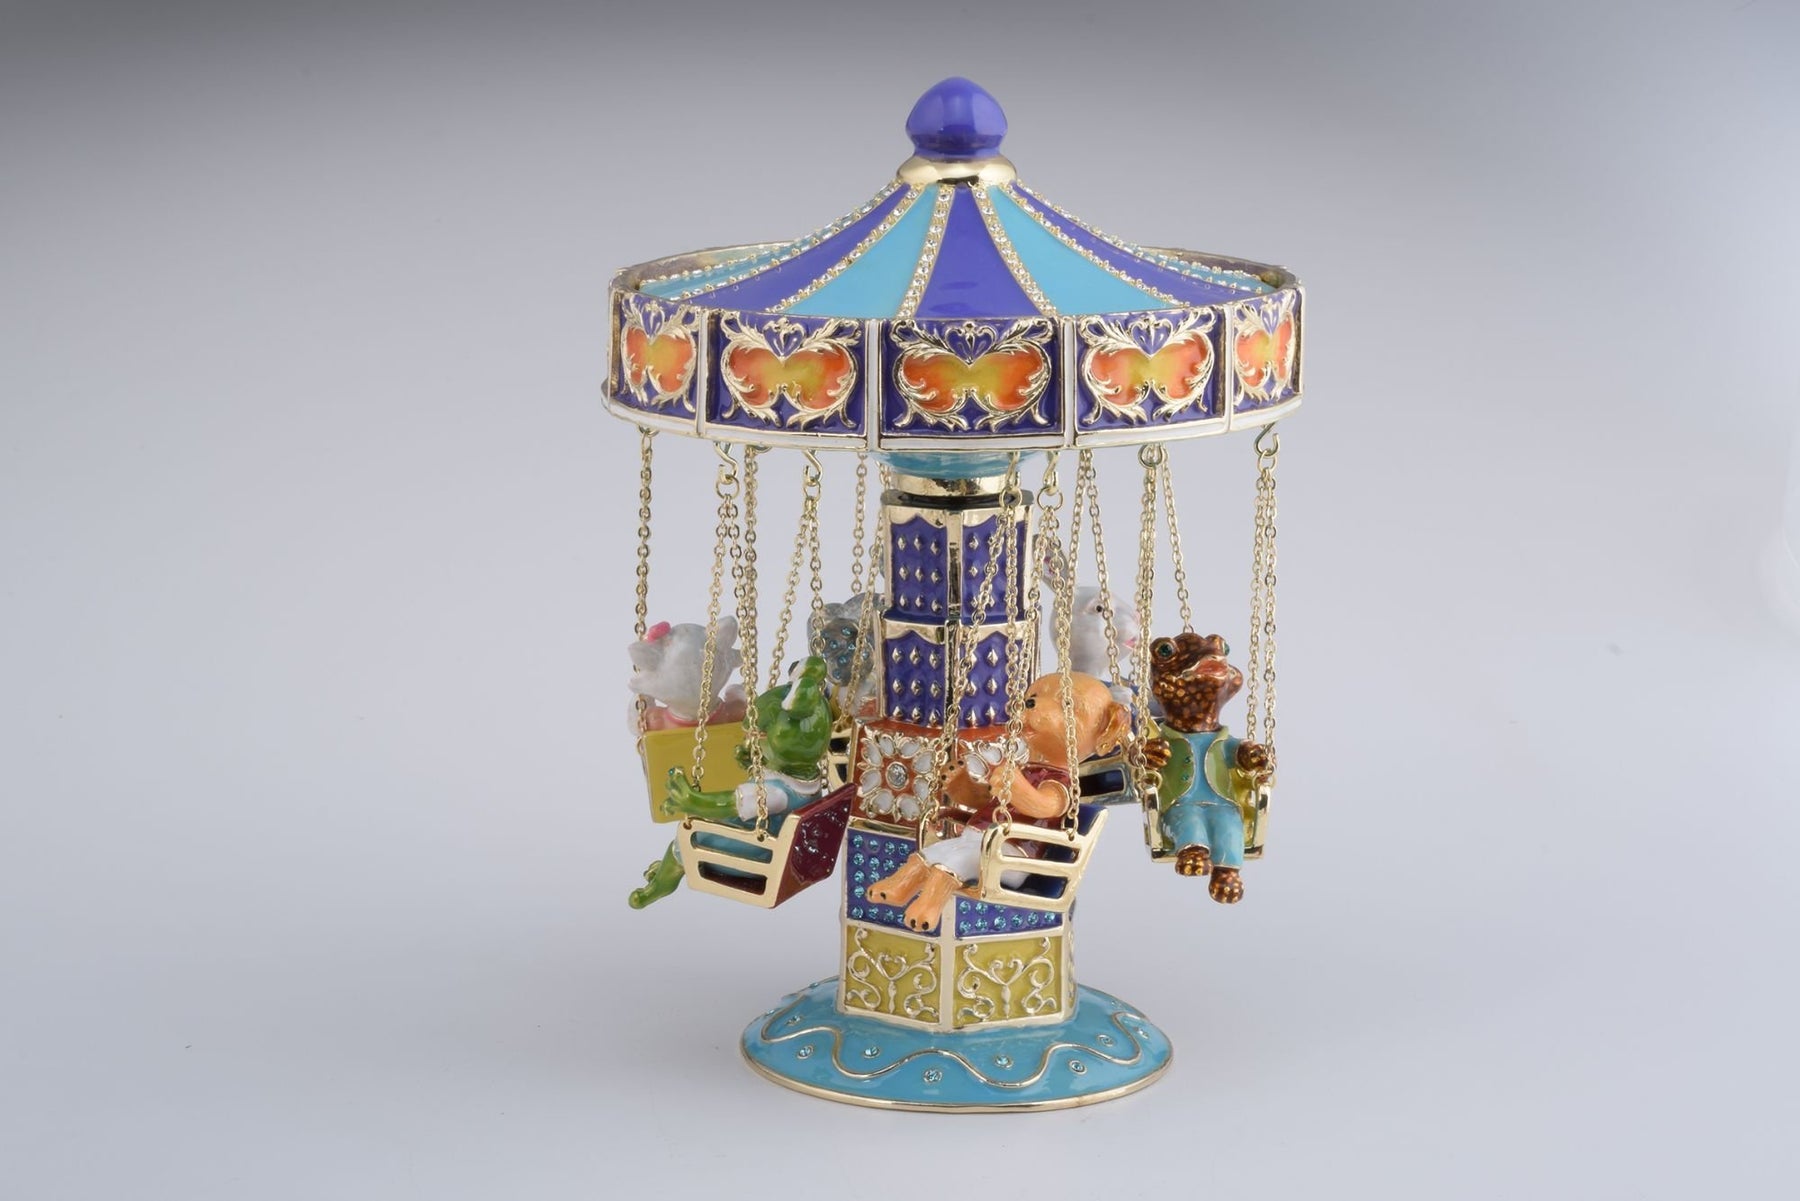 Keren Kopal Swing Carousel with Animals  584.00